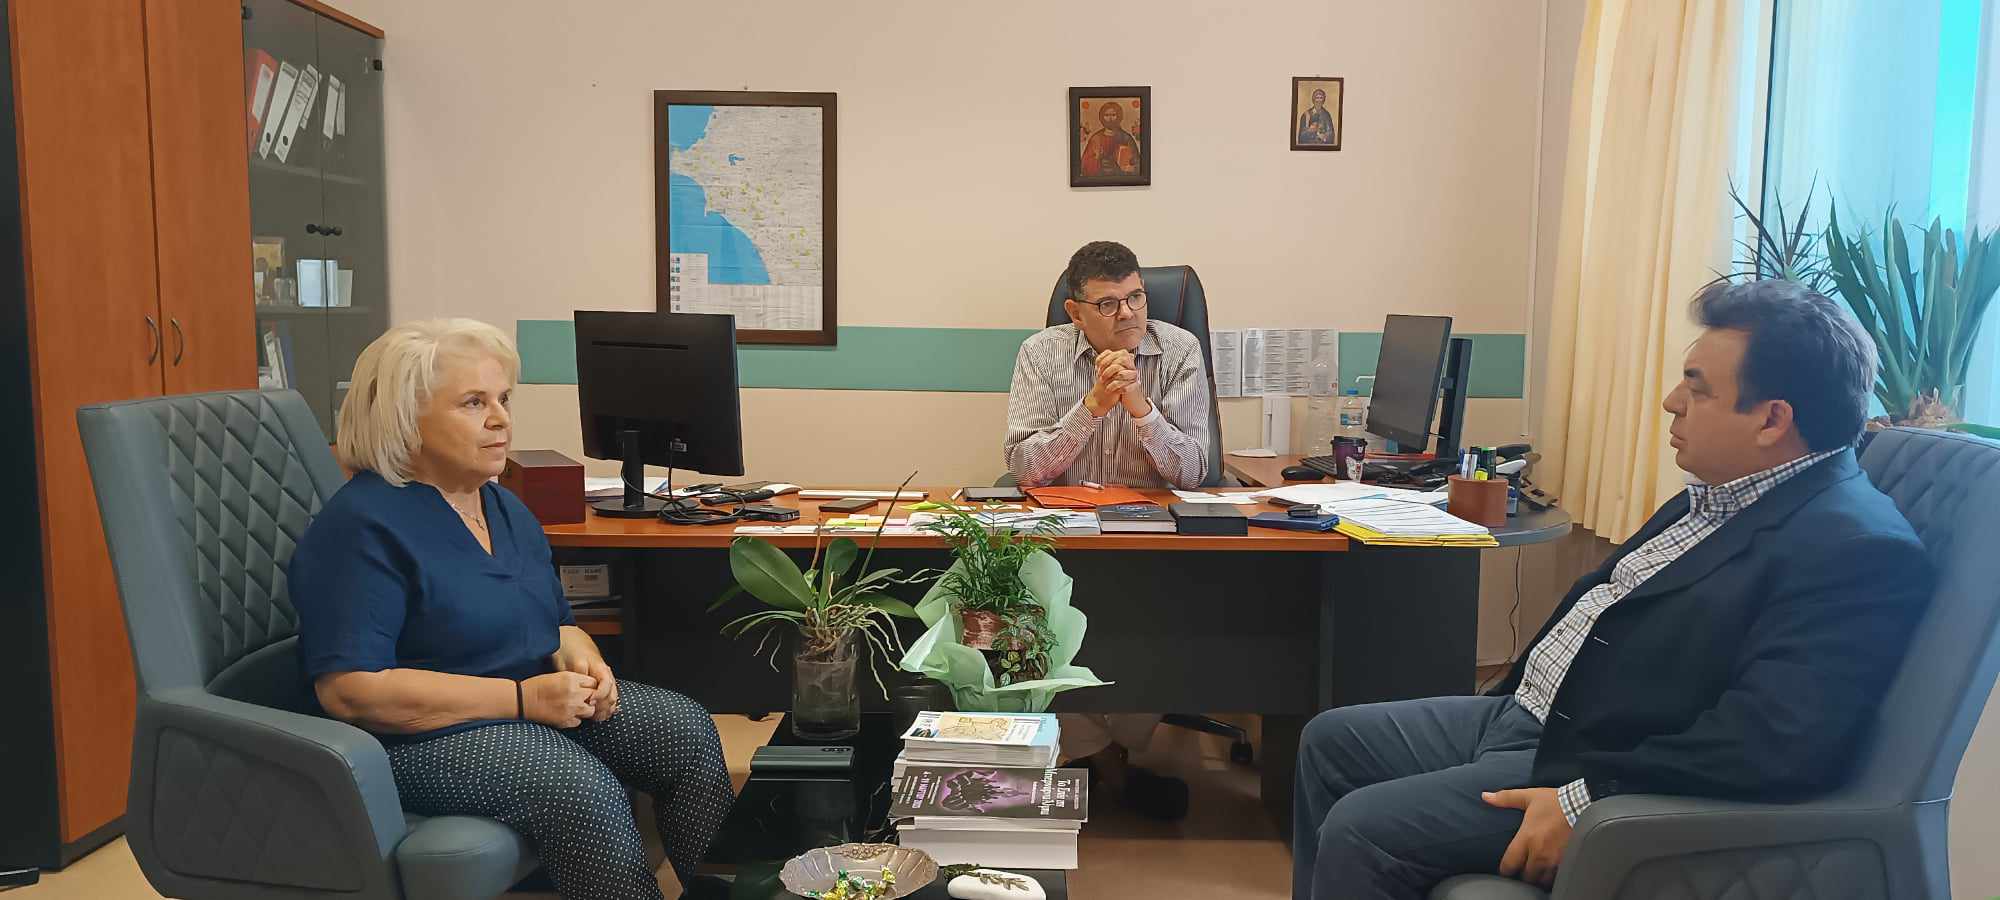 Δελτίο τύπου - Δήμαρχος Πύργου Παν. Αντωνακόπουλος: “Στηρίζουμε κάθε δράση που θα συμβάλλει στην αναβάθμιση του Νοσοκομείου”